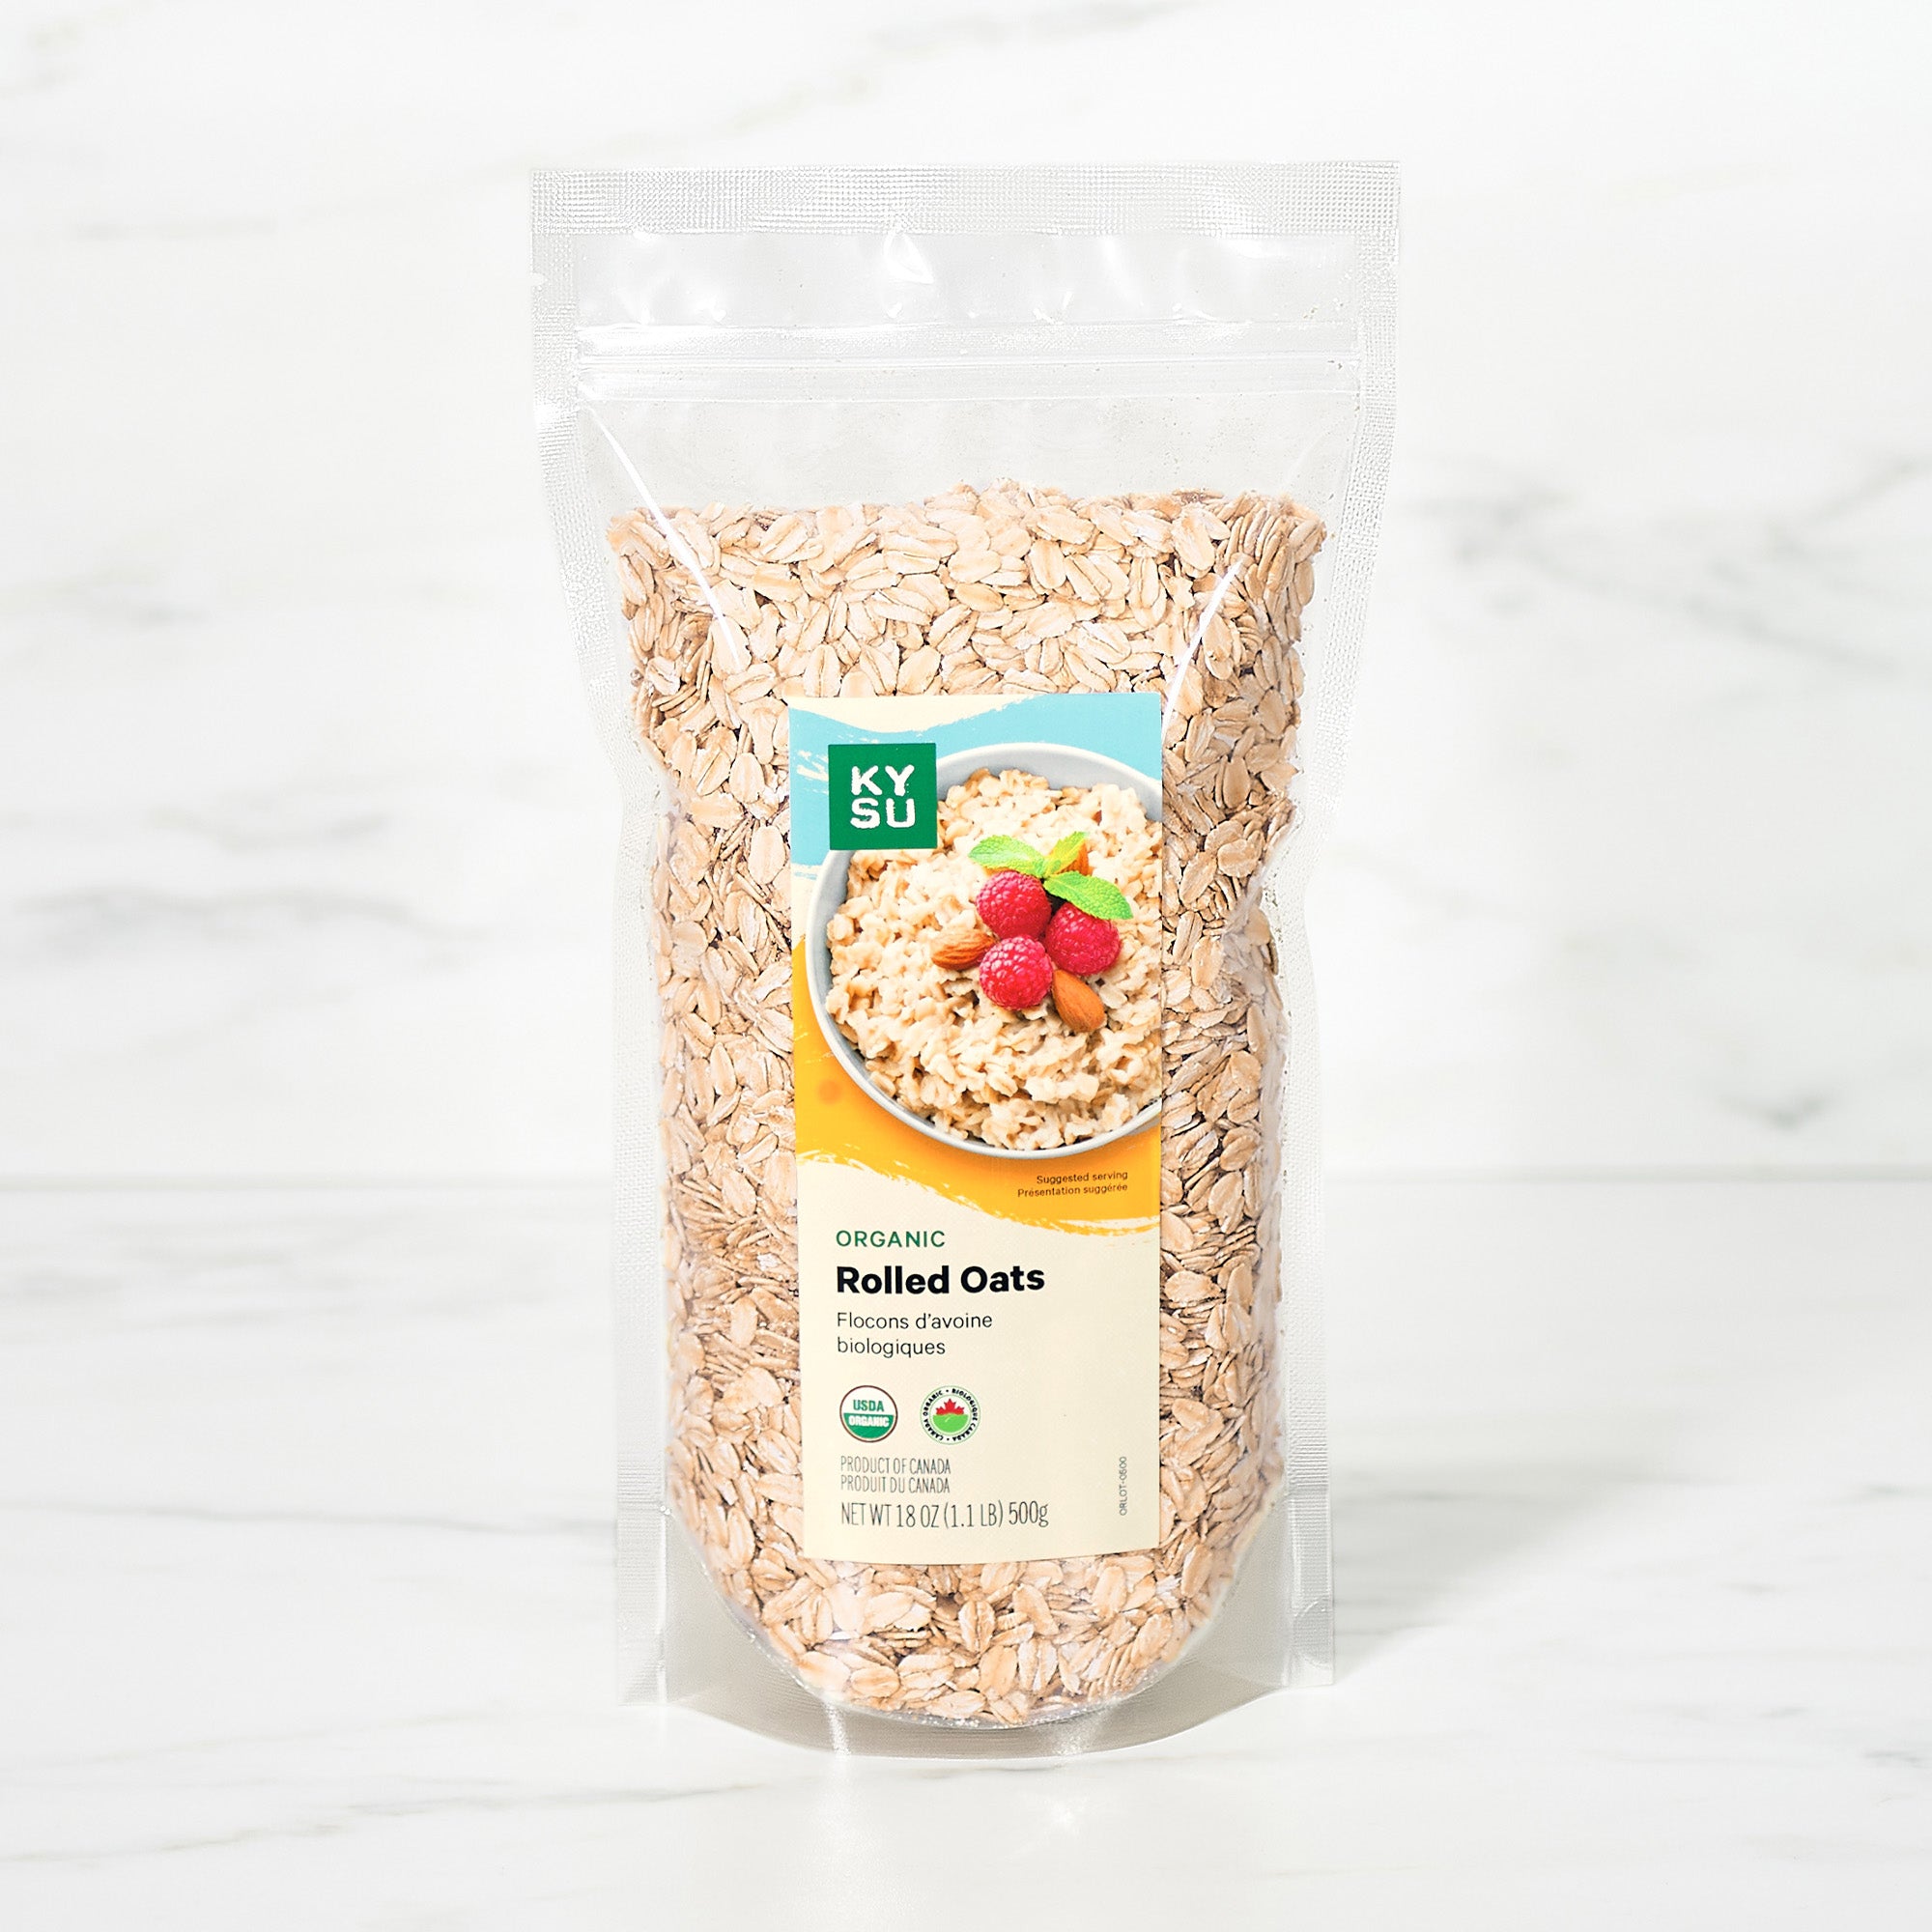 Organic rolled oats, 1.1 lb